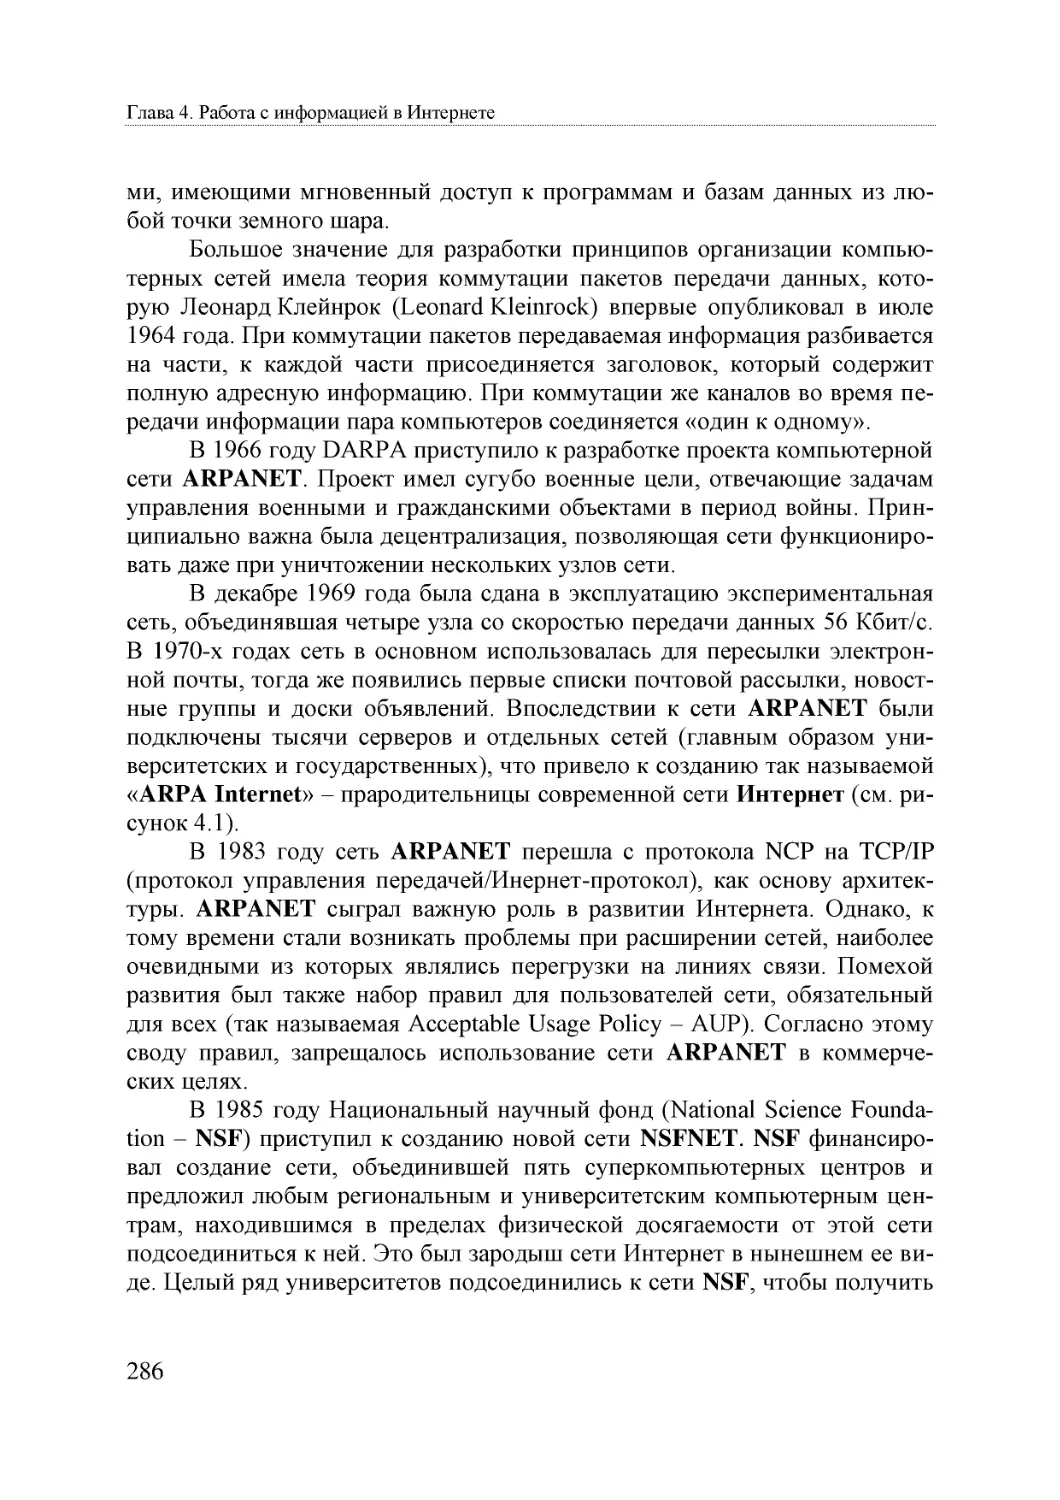 Informatika_Uchebnik_dlya_vuzov_2010 286